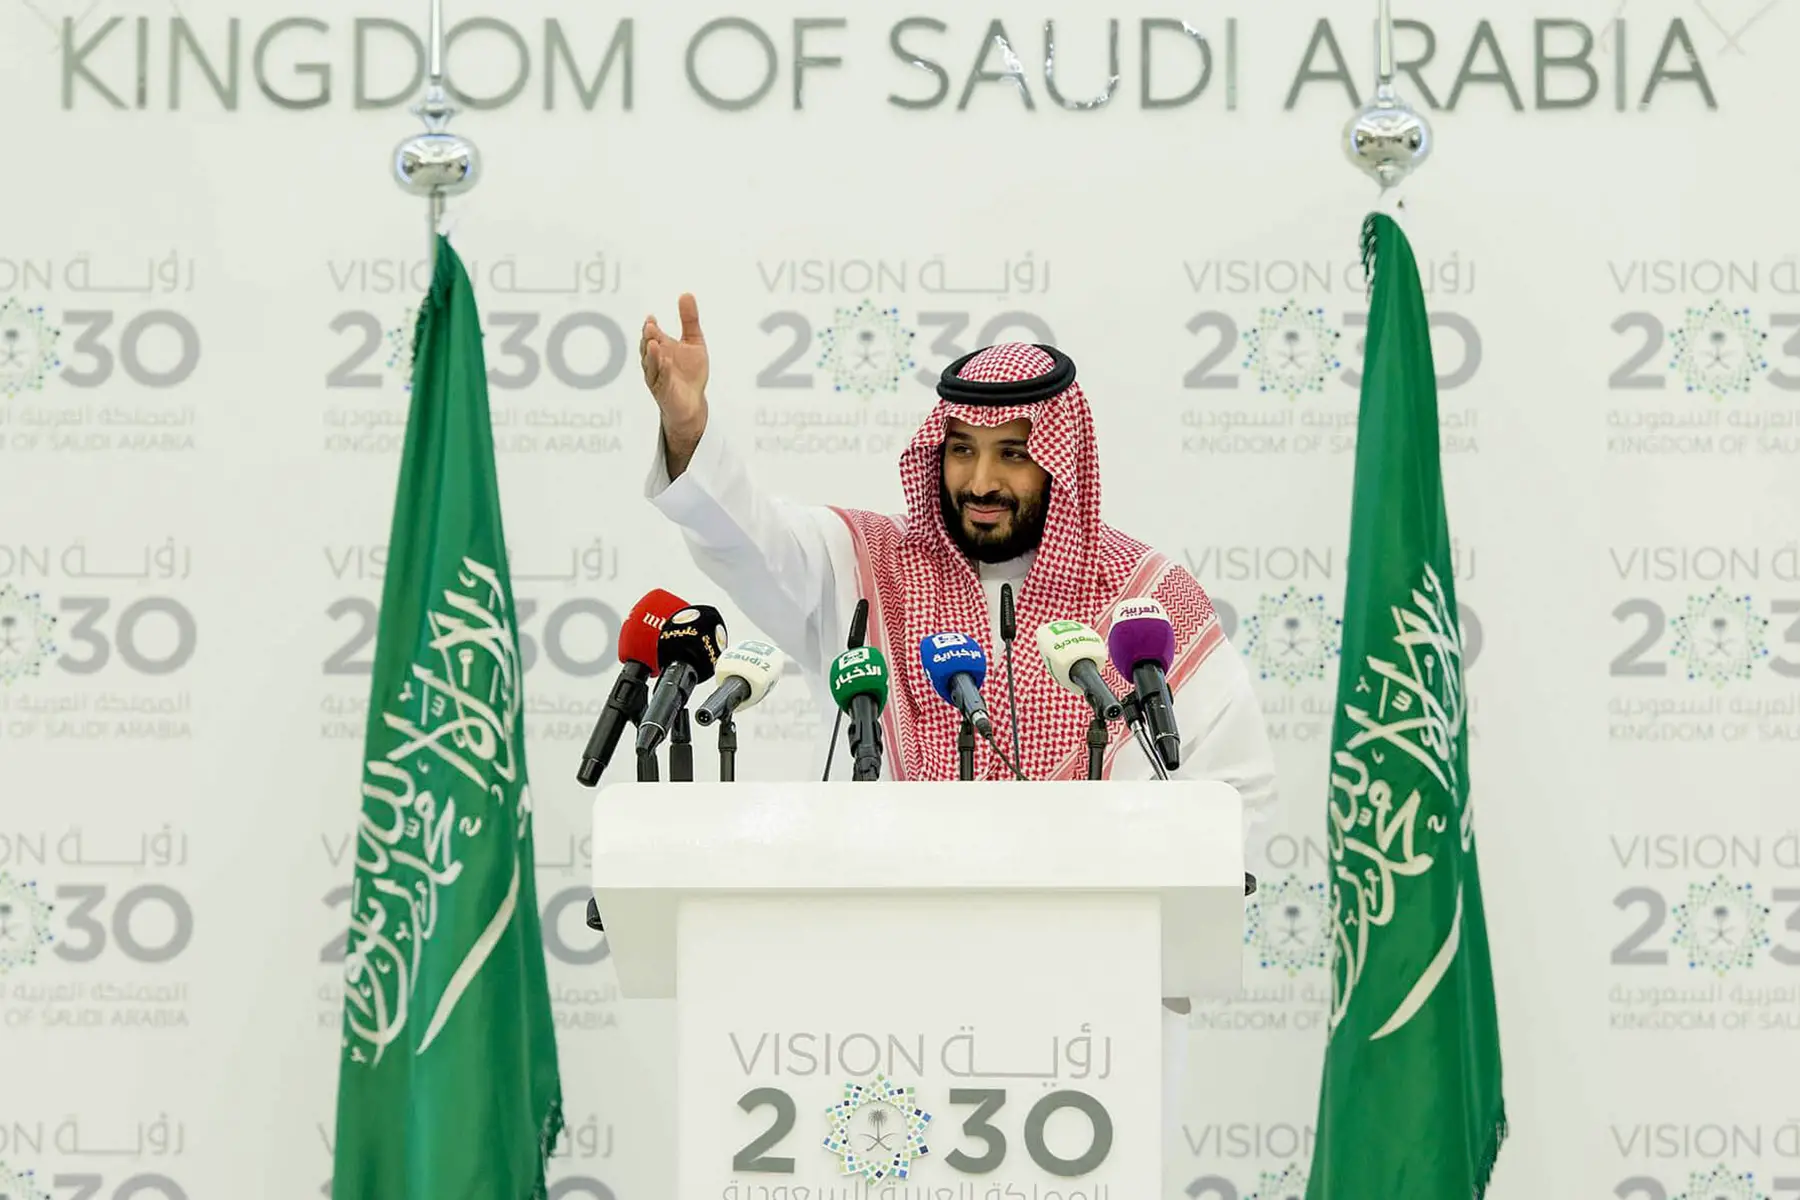 Saudi Vision 2030